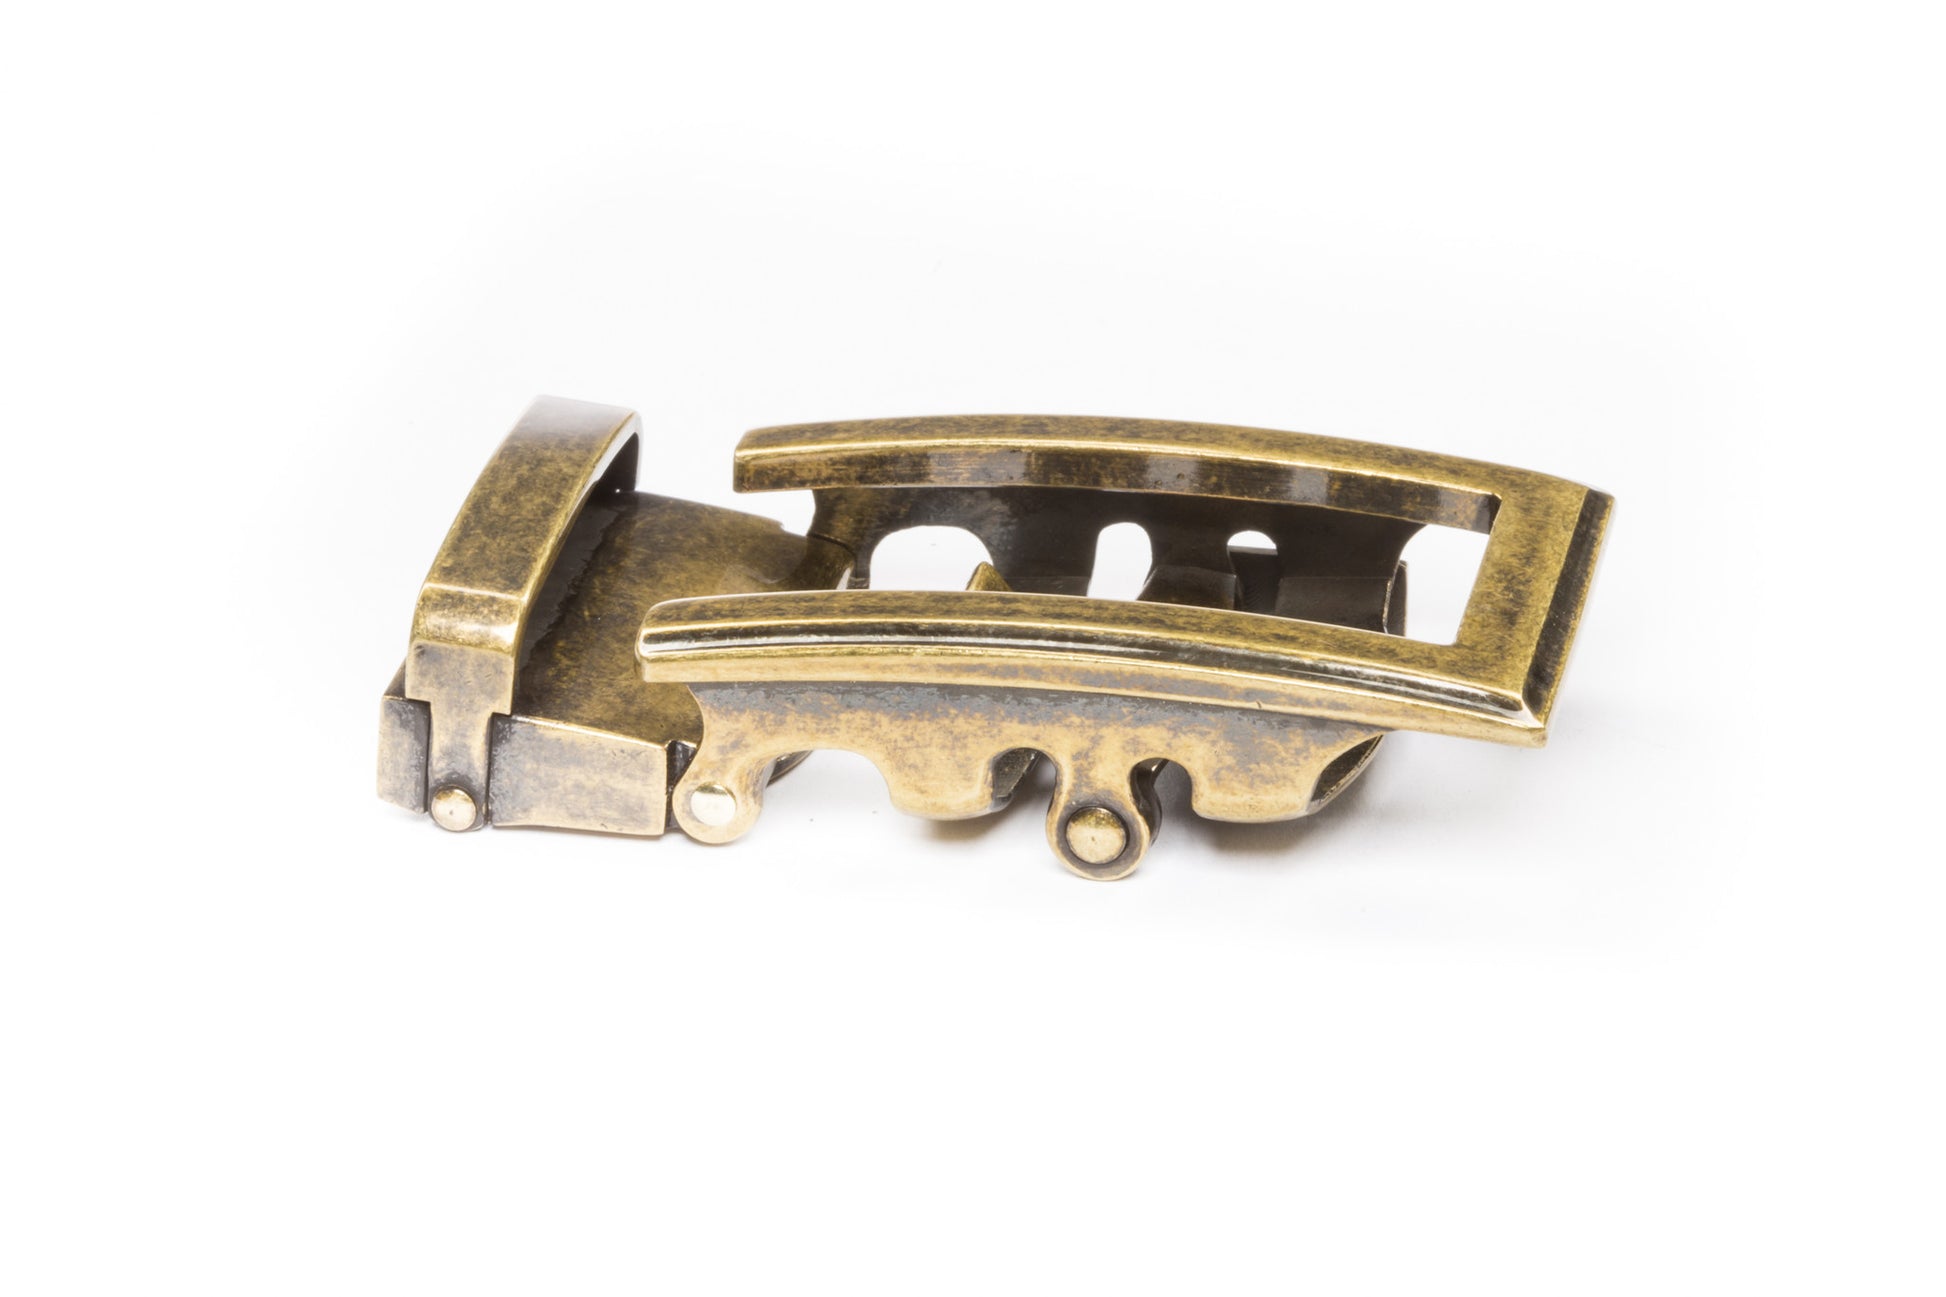 Antique Belt Buckle - 1.5 Replacement Belt Buckle For Men Vintage Gold -  Hanks Belts